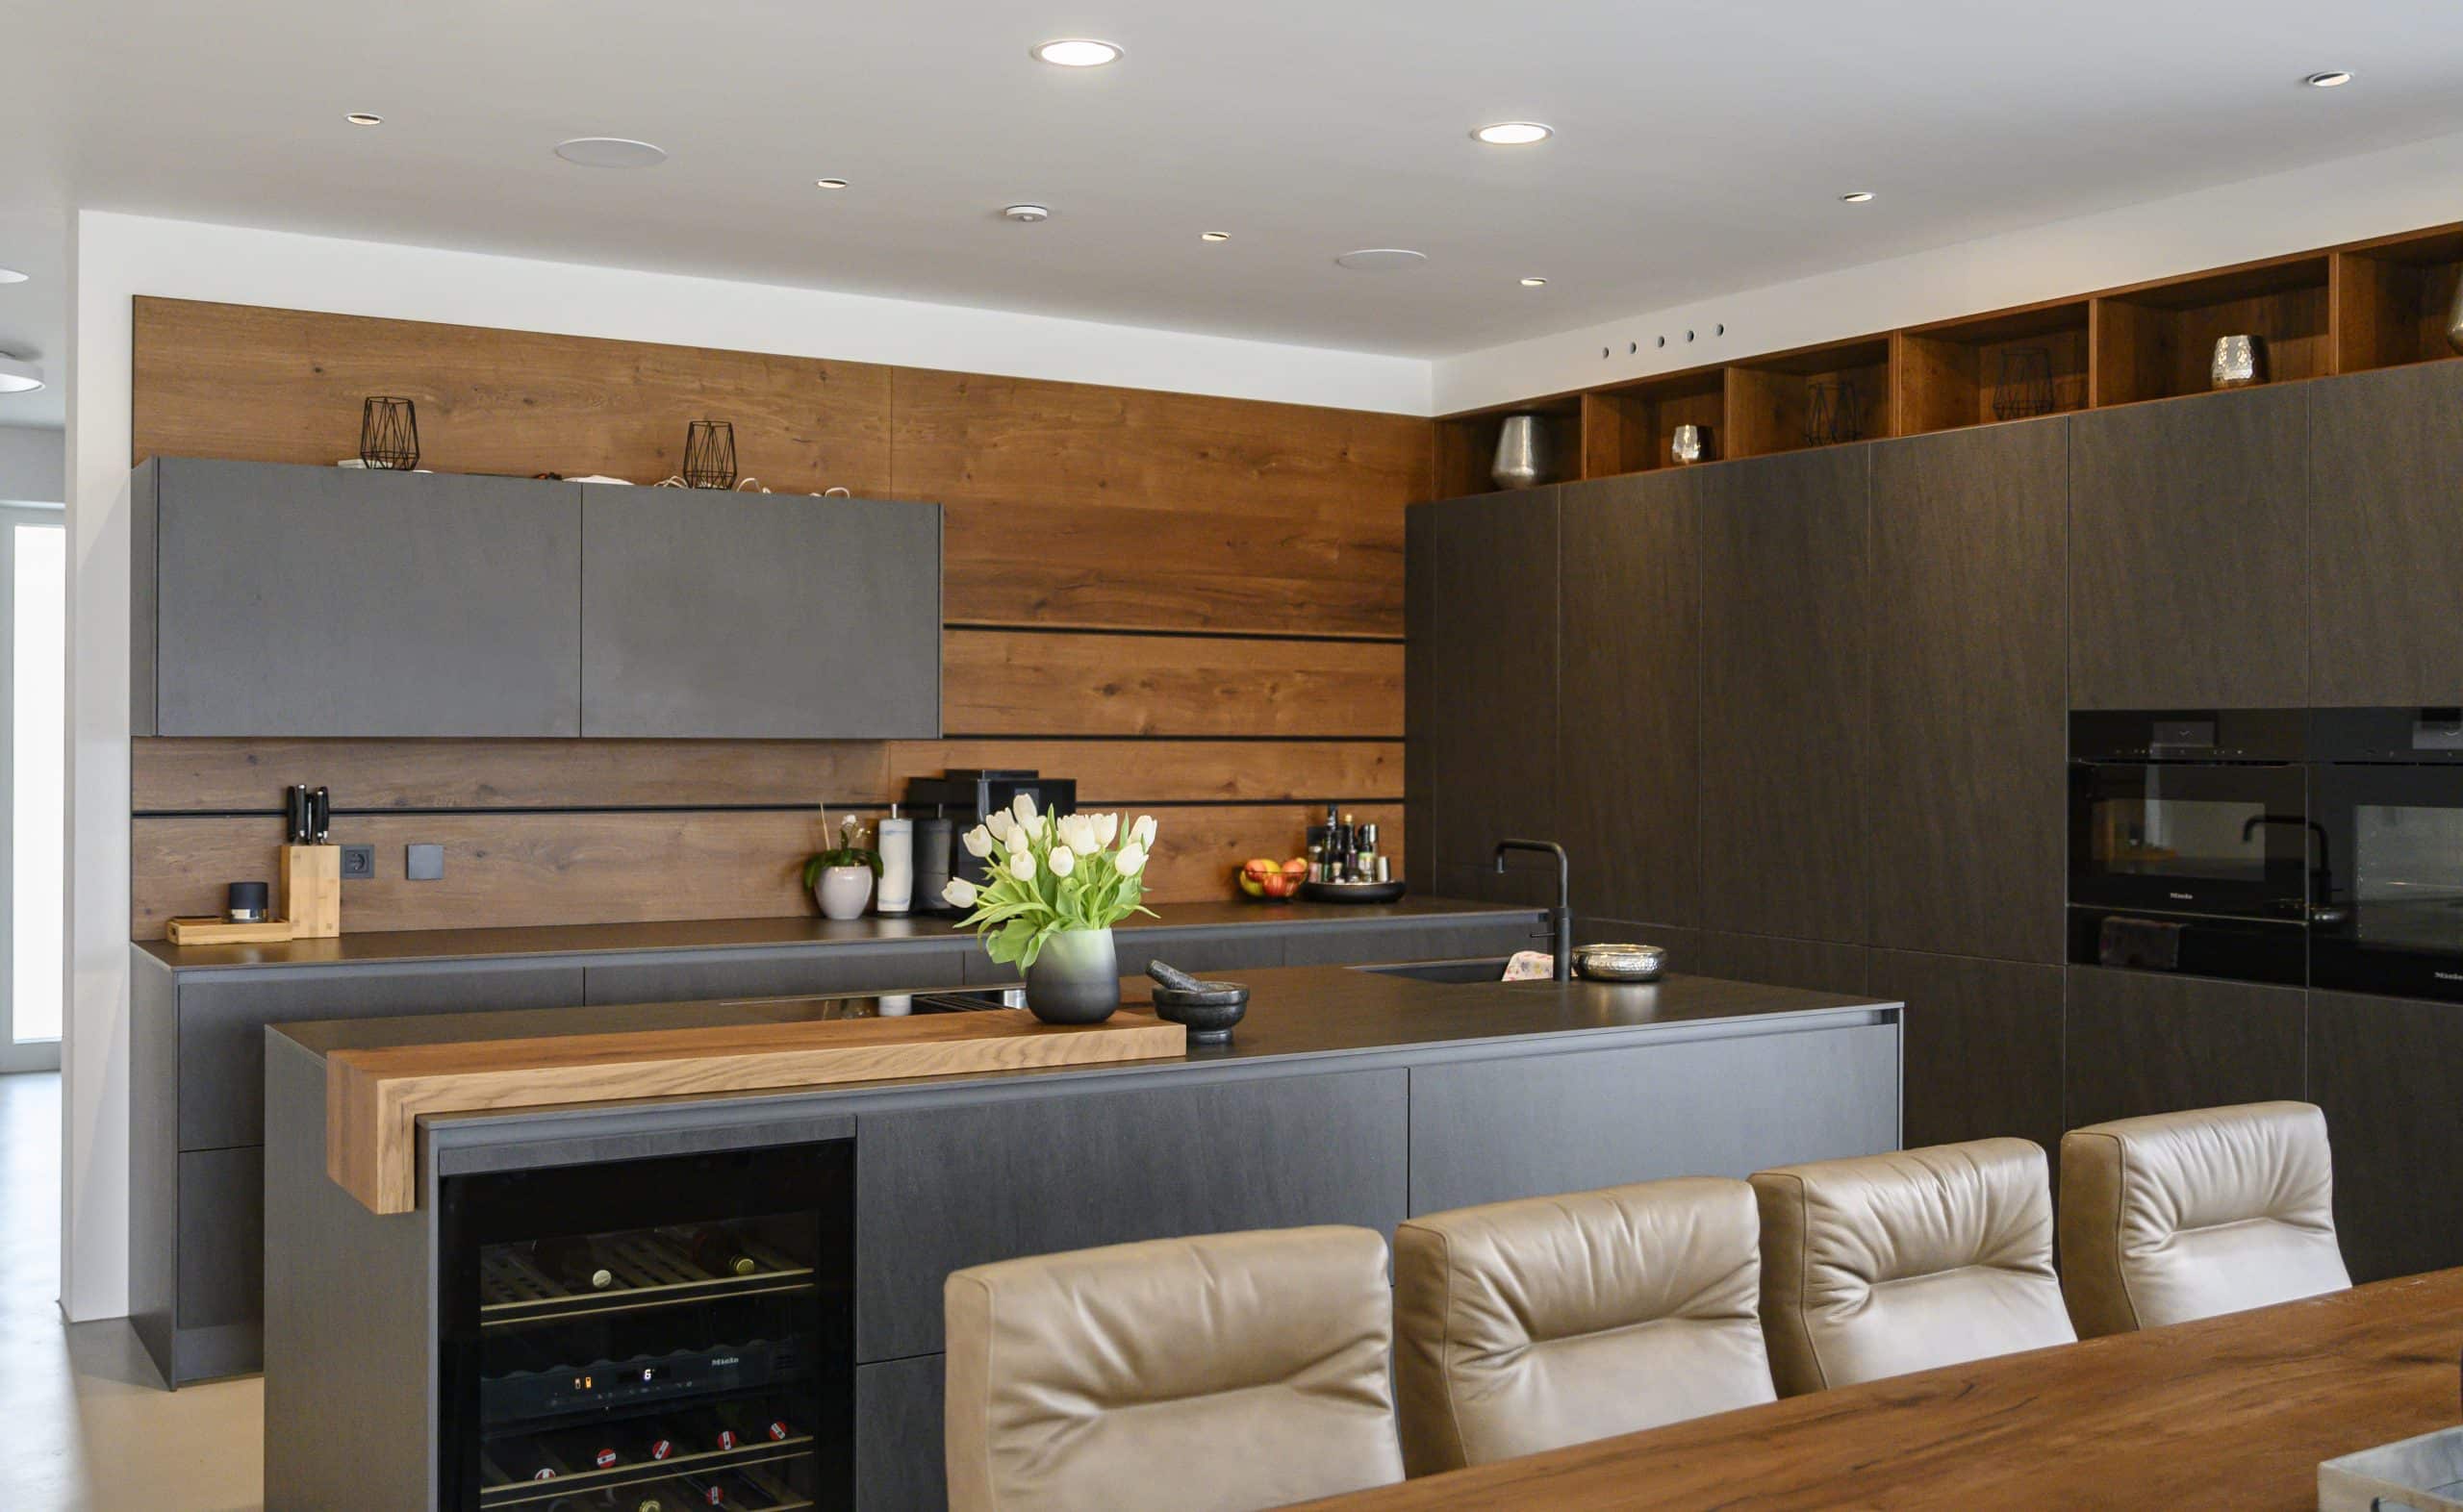 reginaplaza präsentiert eine offene Wohnküche mit dunkler Küche, heller Ledergarnitur und ästhetischen Dekoelementen.